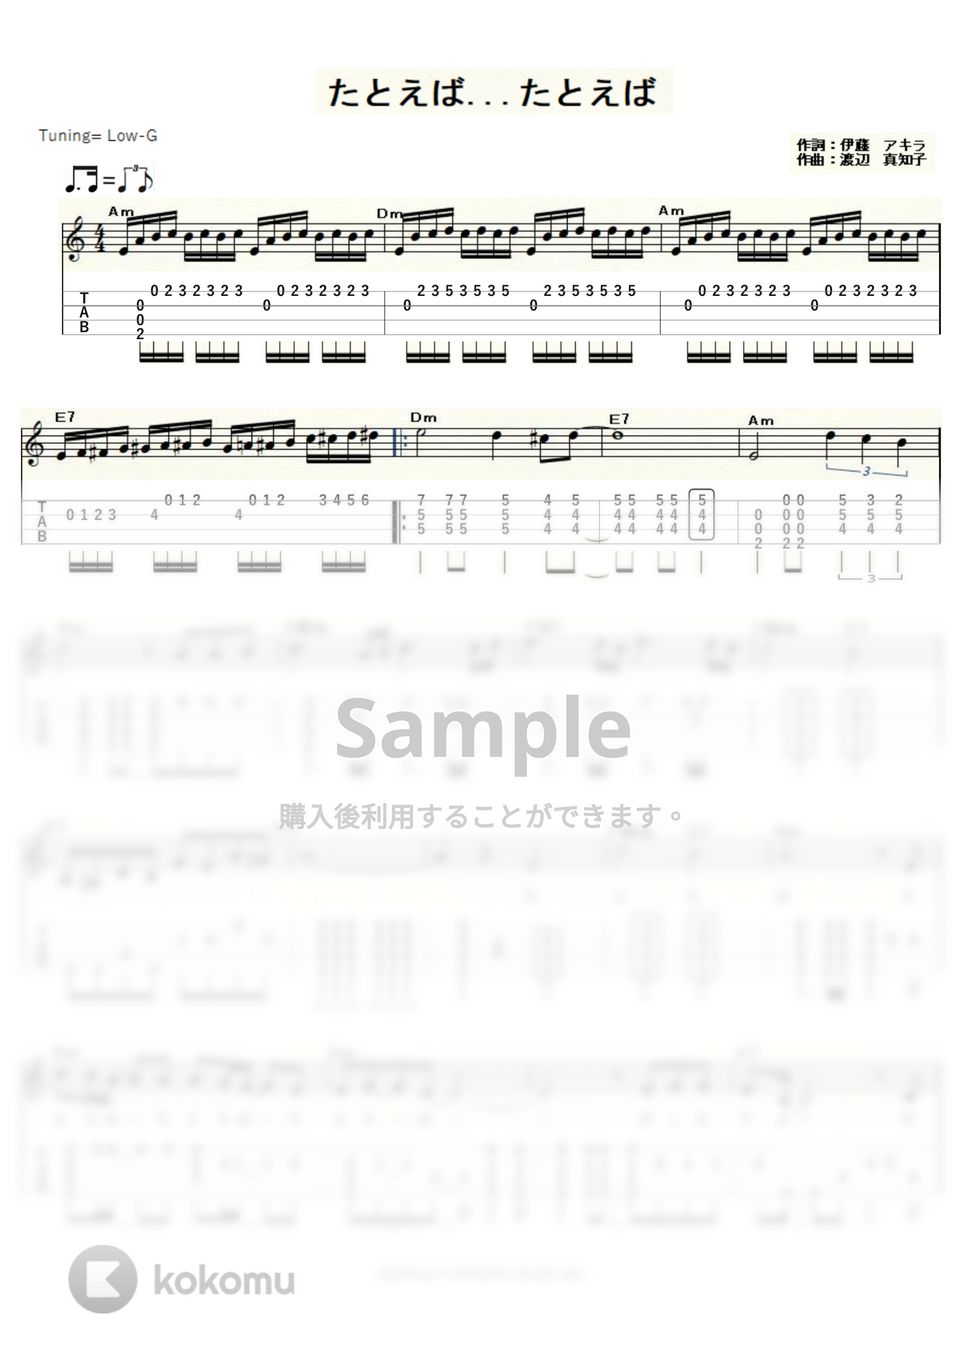 渡辺真知子 - たとえば…たとえば (ｳｸﾚﾚｿﾛ / Low-G / 中級～上級) by ukulelepapa